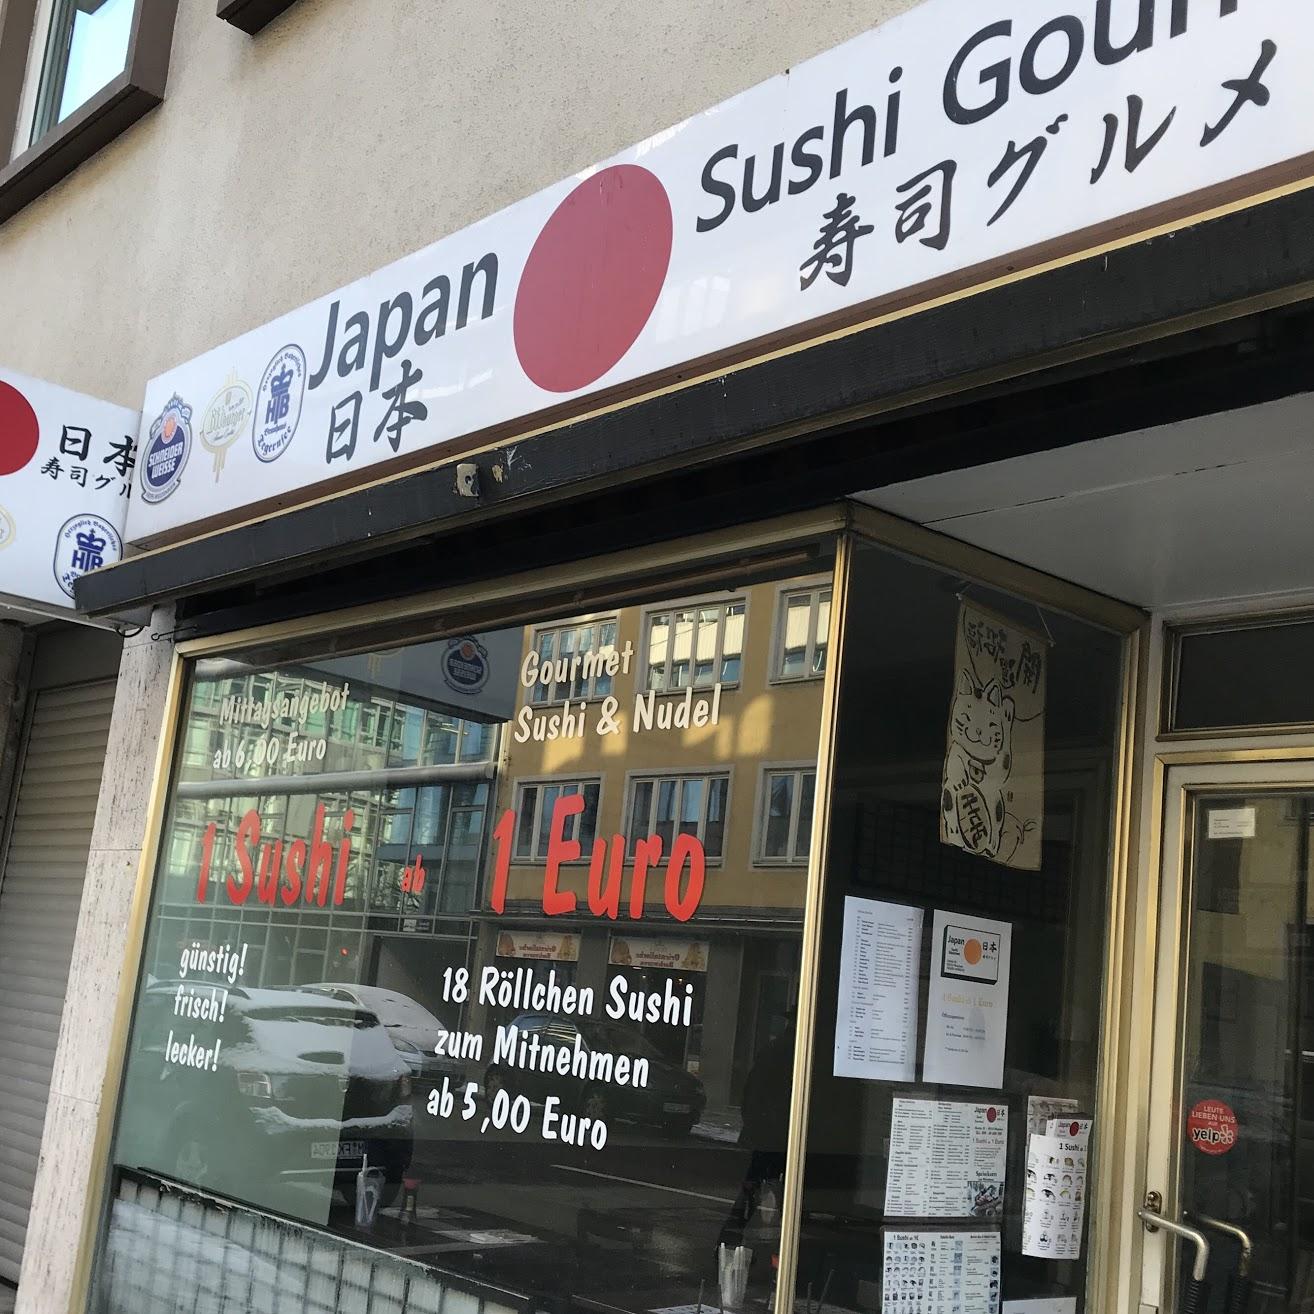 Restaurant "Japan Sushi Gourmet" in München